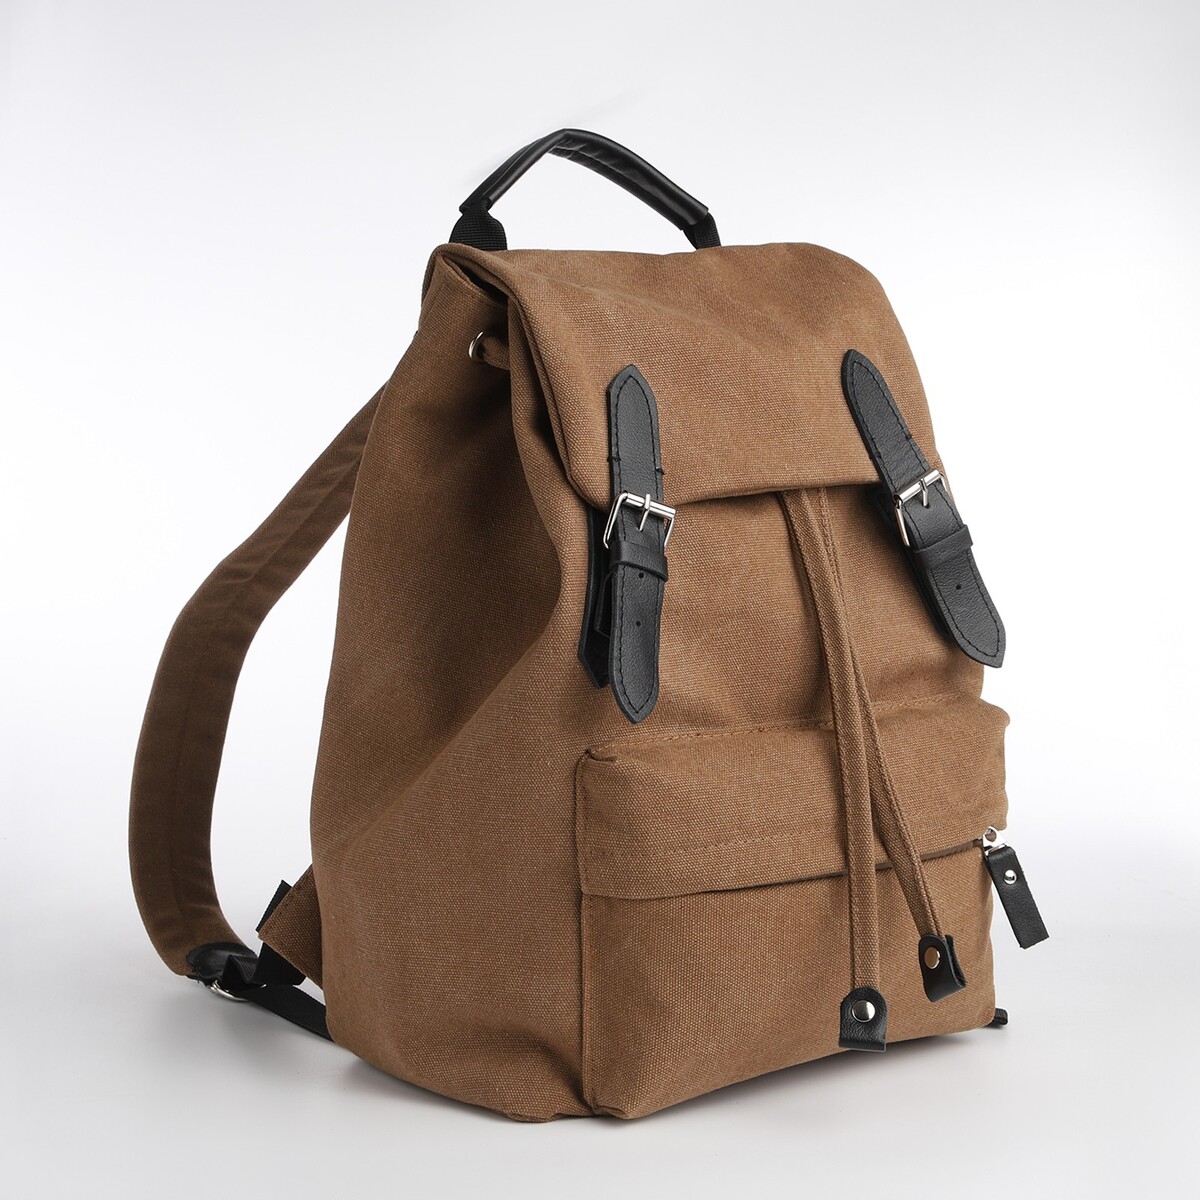 Рюкзак мужской городской textura, текстиль, цвет коричневый рюкзак городской textura